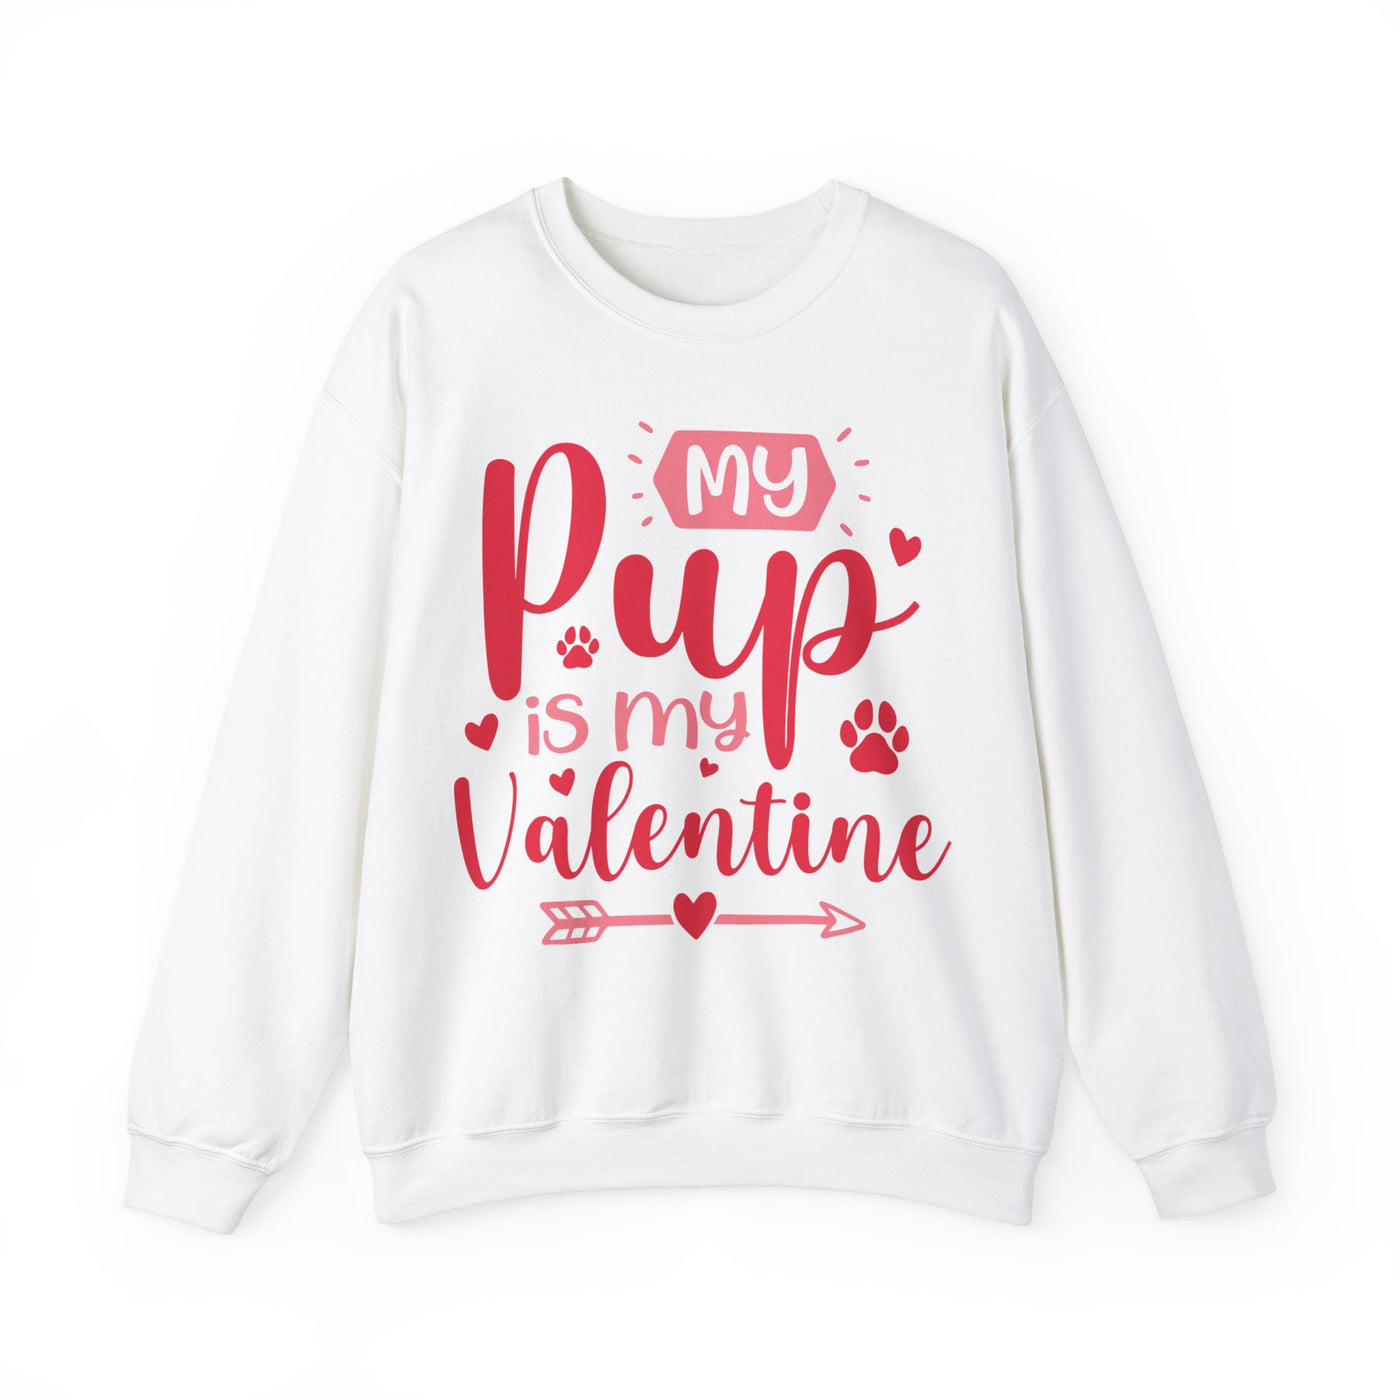 My Pup Is My Valentine Sweatshirt